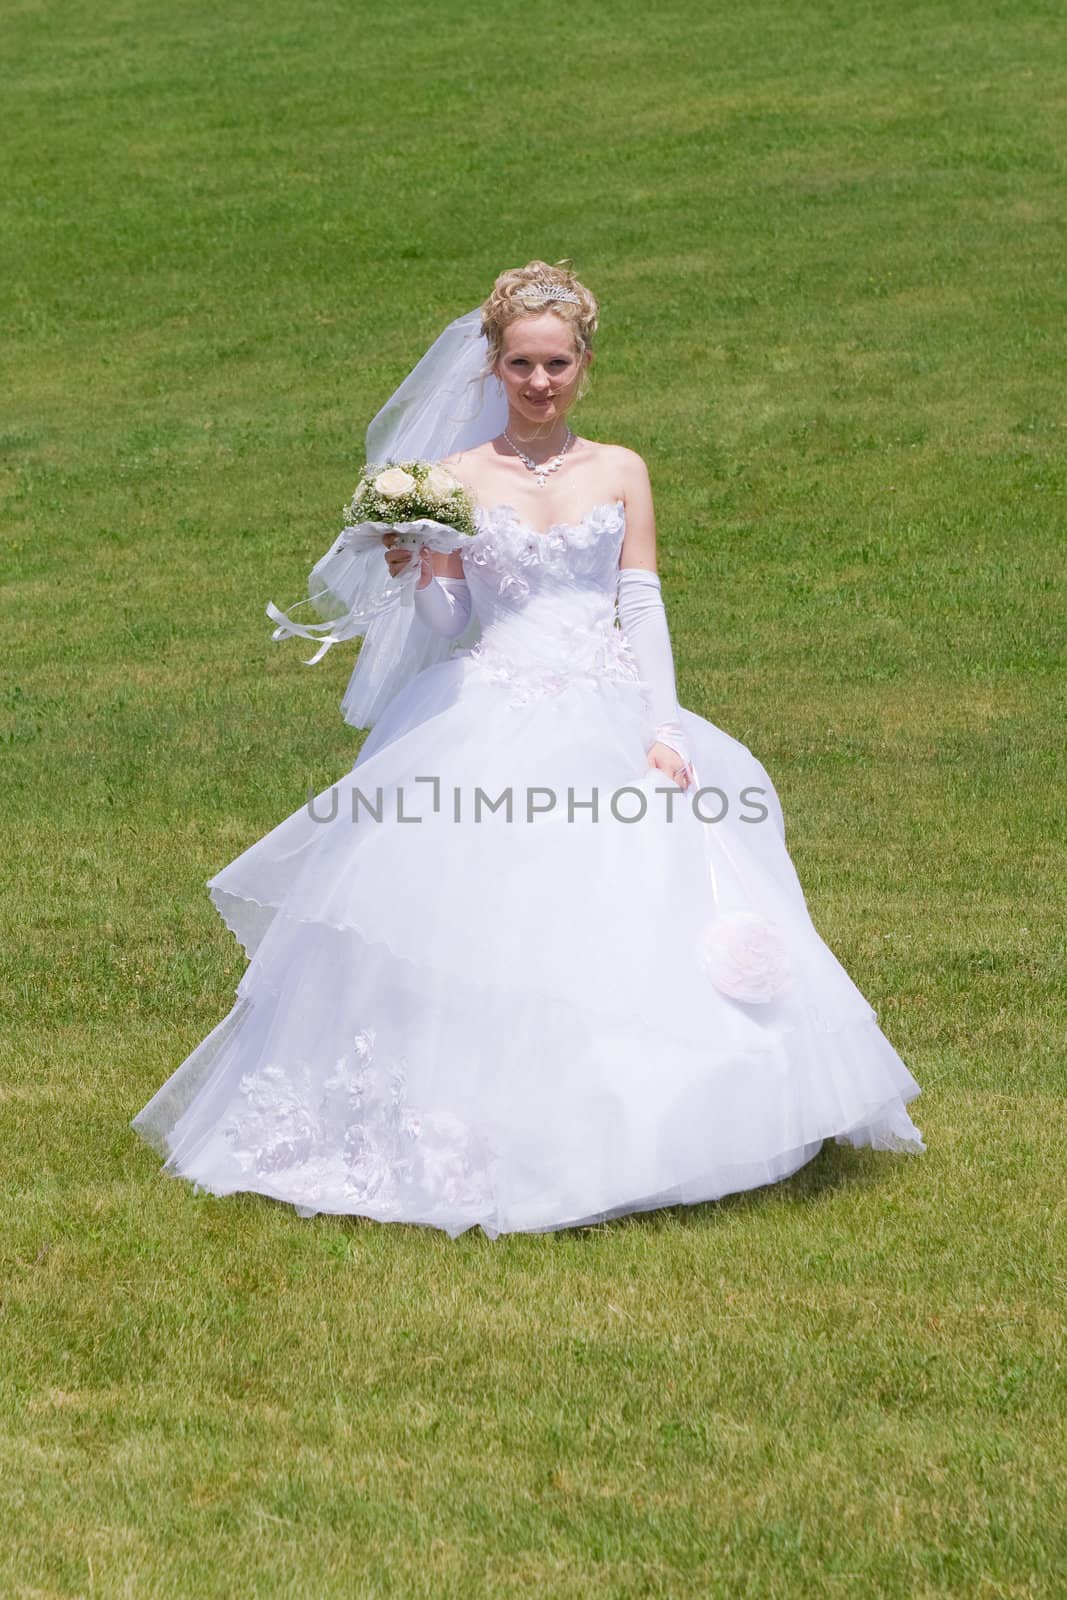 happy bride runs to the groom by vsurkov